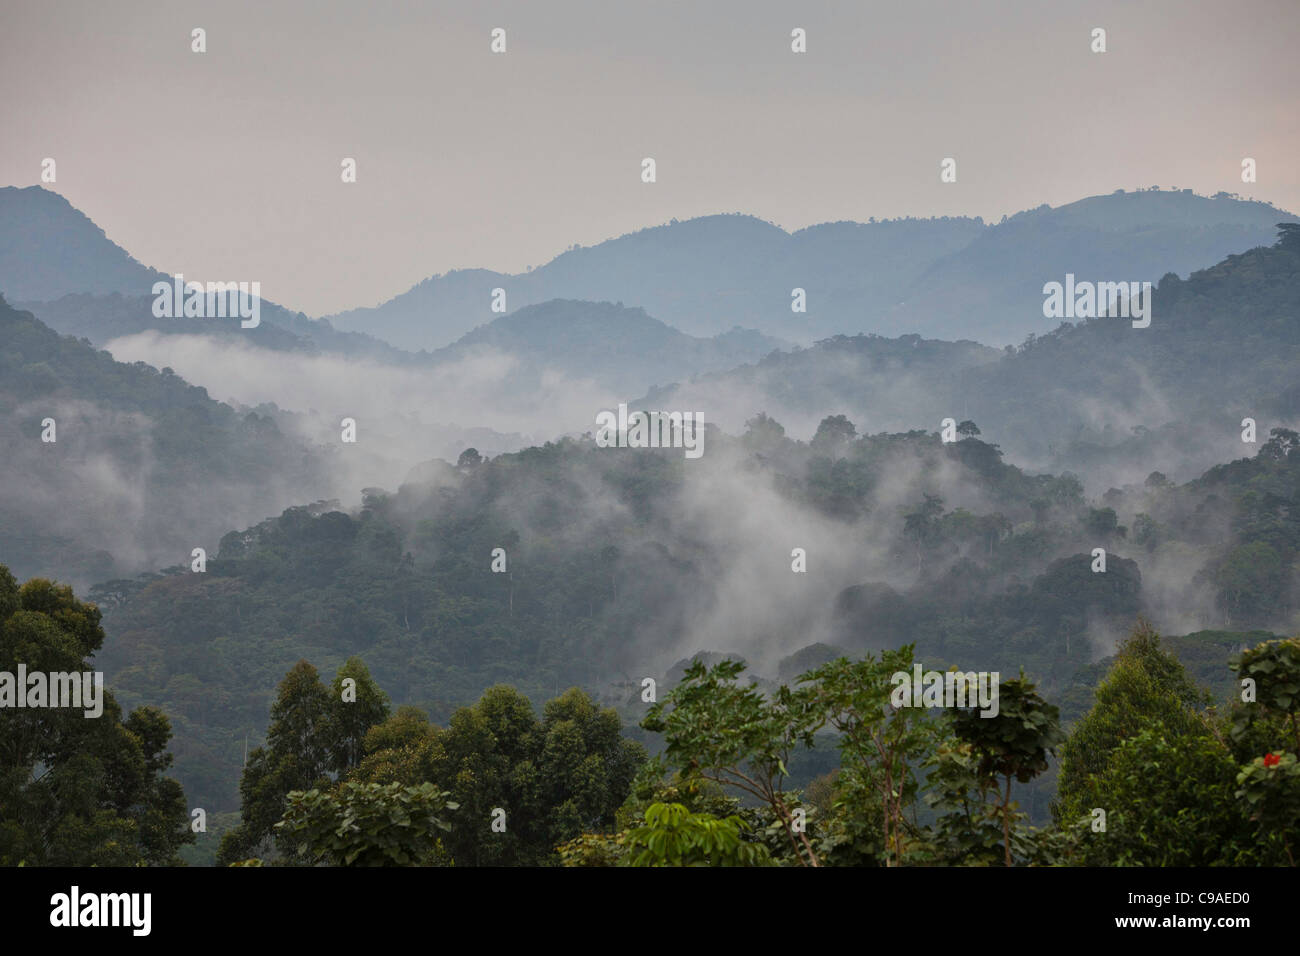 Le matin le brouillard de vallée à travers le Parc National de la Forêt impénétrable de Bwindi, au sud-ouest de l'Ouganda. Banque D'Images